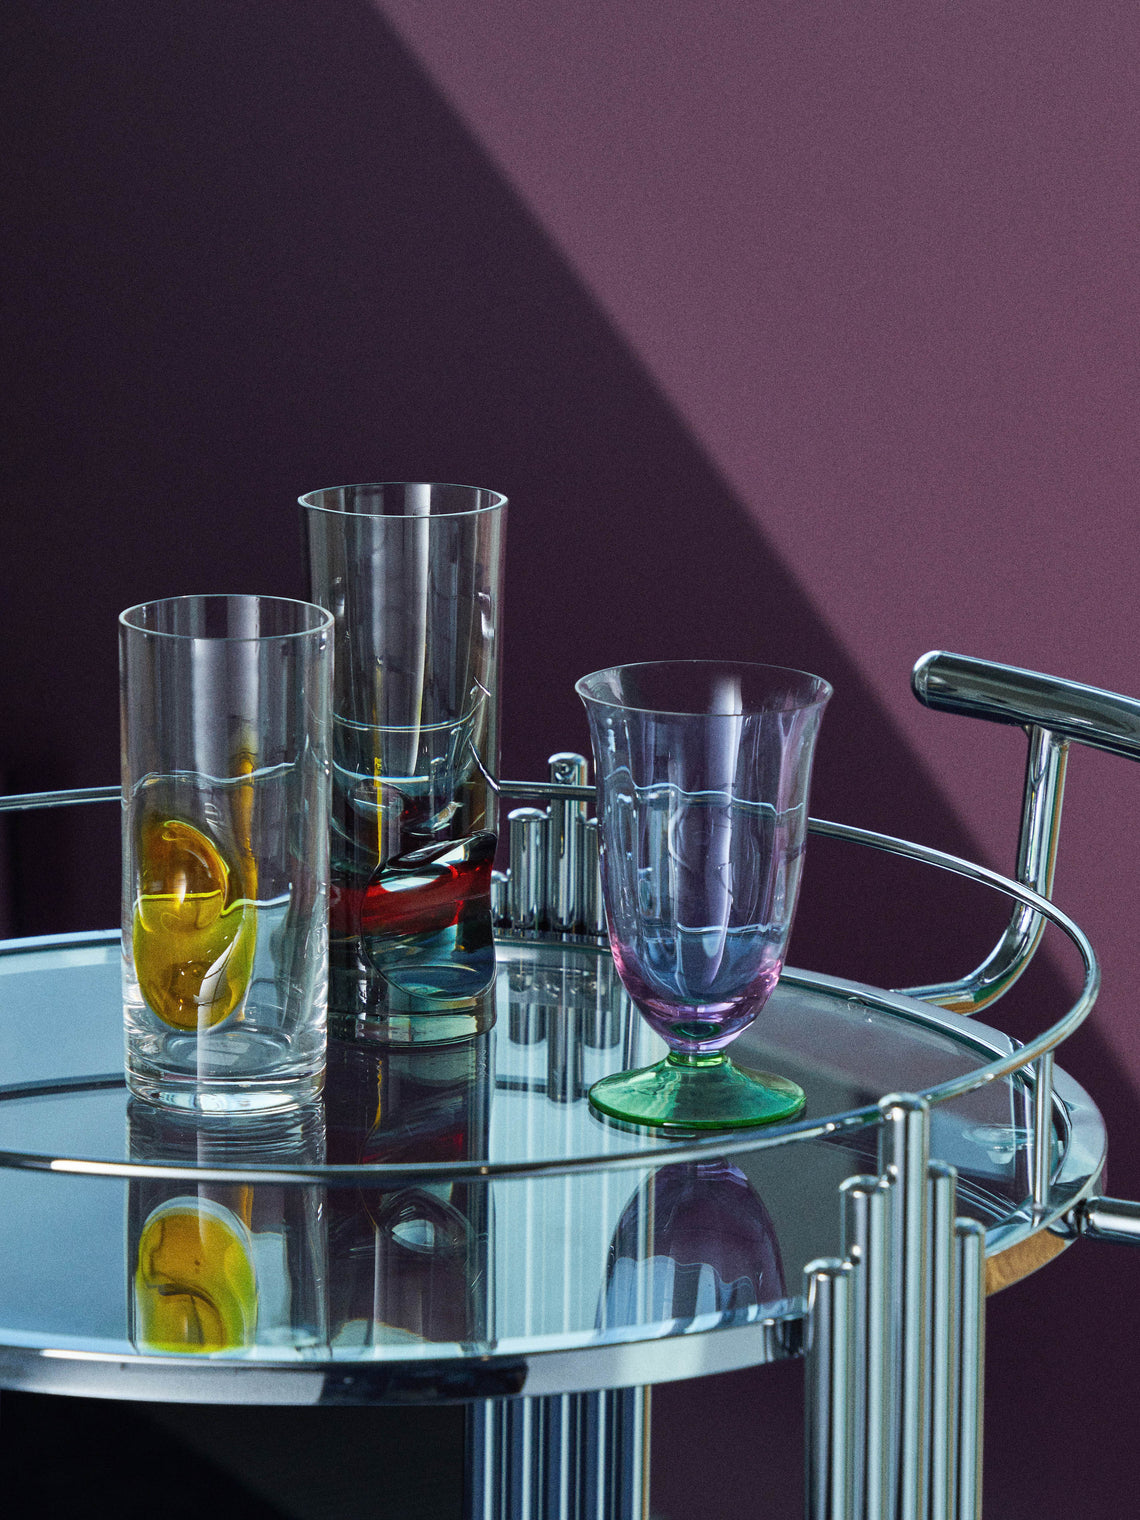 NasonMoretti - Archive Revival 1982 Hand-Blown Murano Water Glass - Purple - ABASK